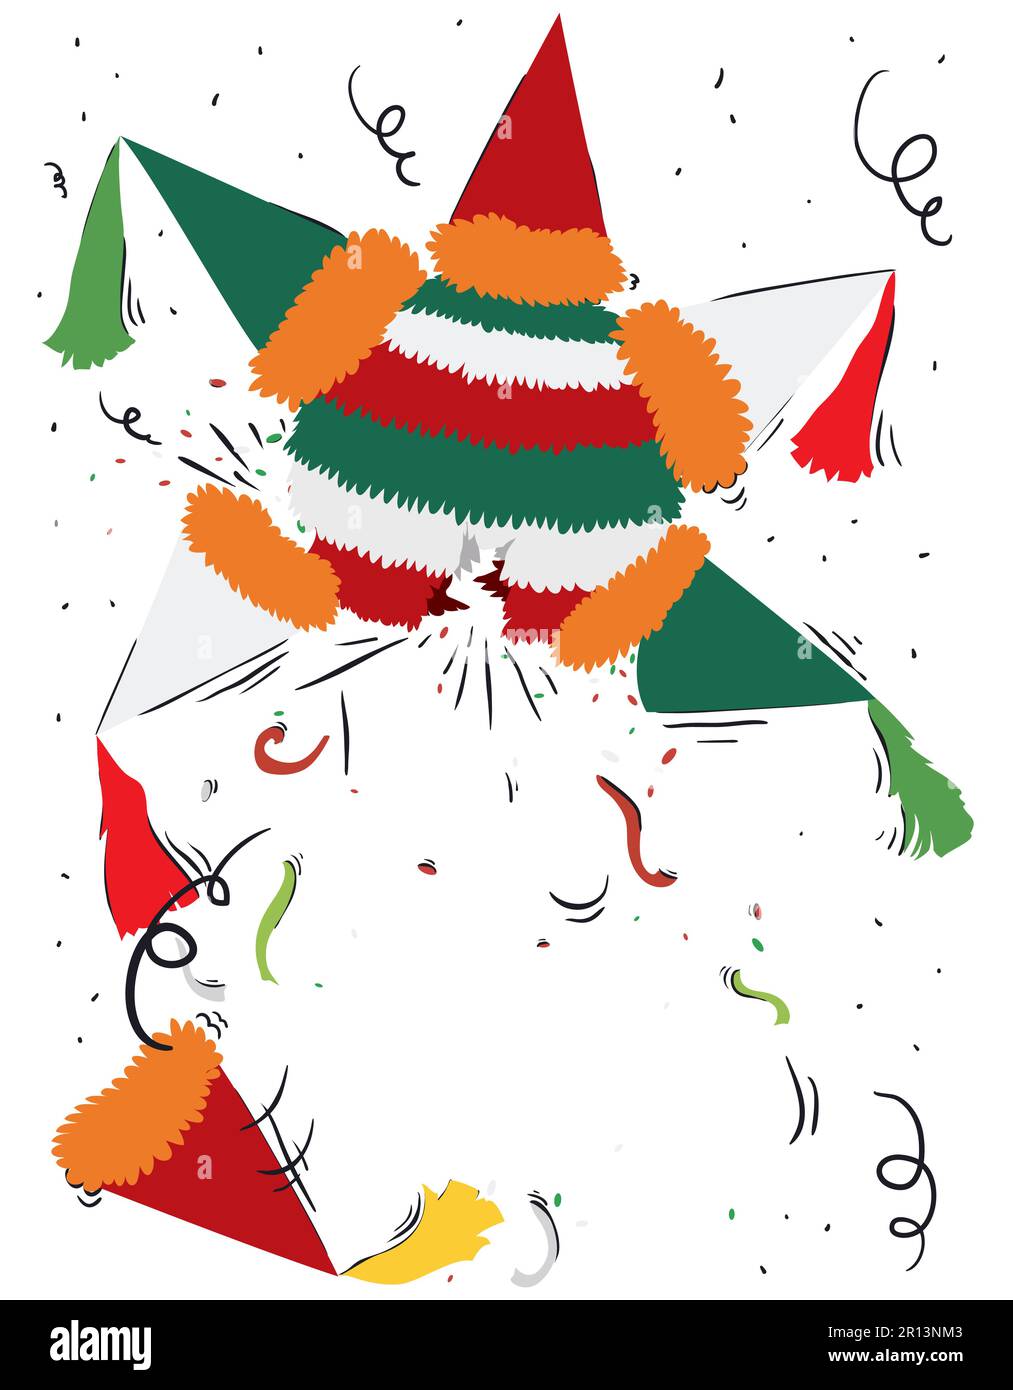 Scène festive d'un pinata cassé lors d'une fête avec des confettis et des banderoles. Motif dans des couleurs et des gribouillages plats. Illustration de Vecteur